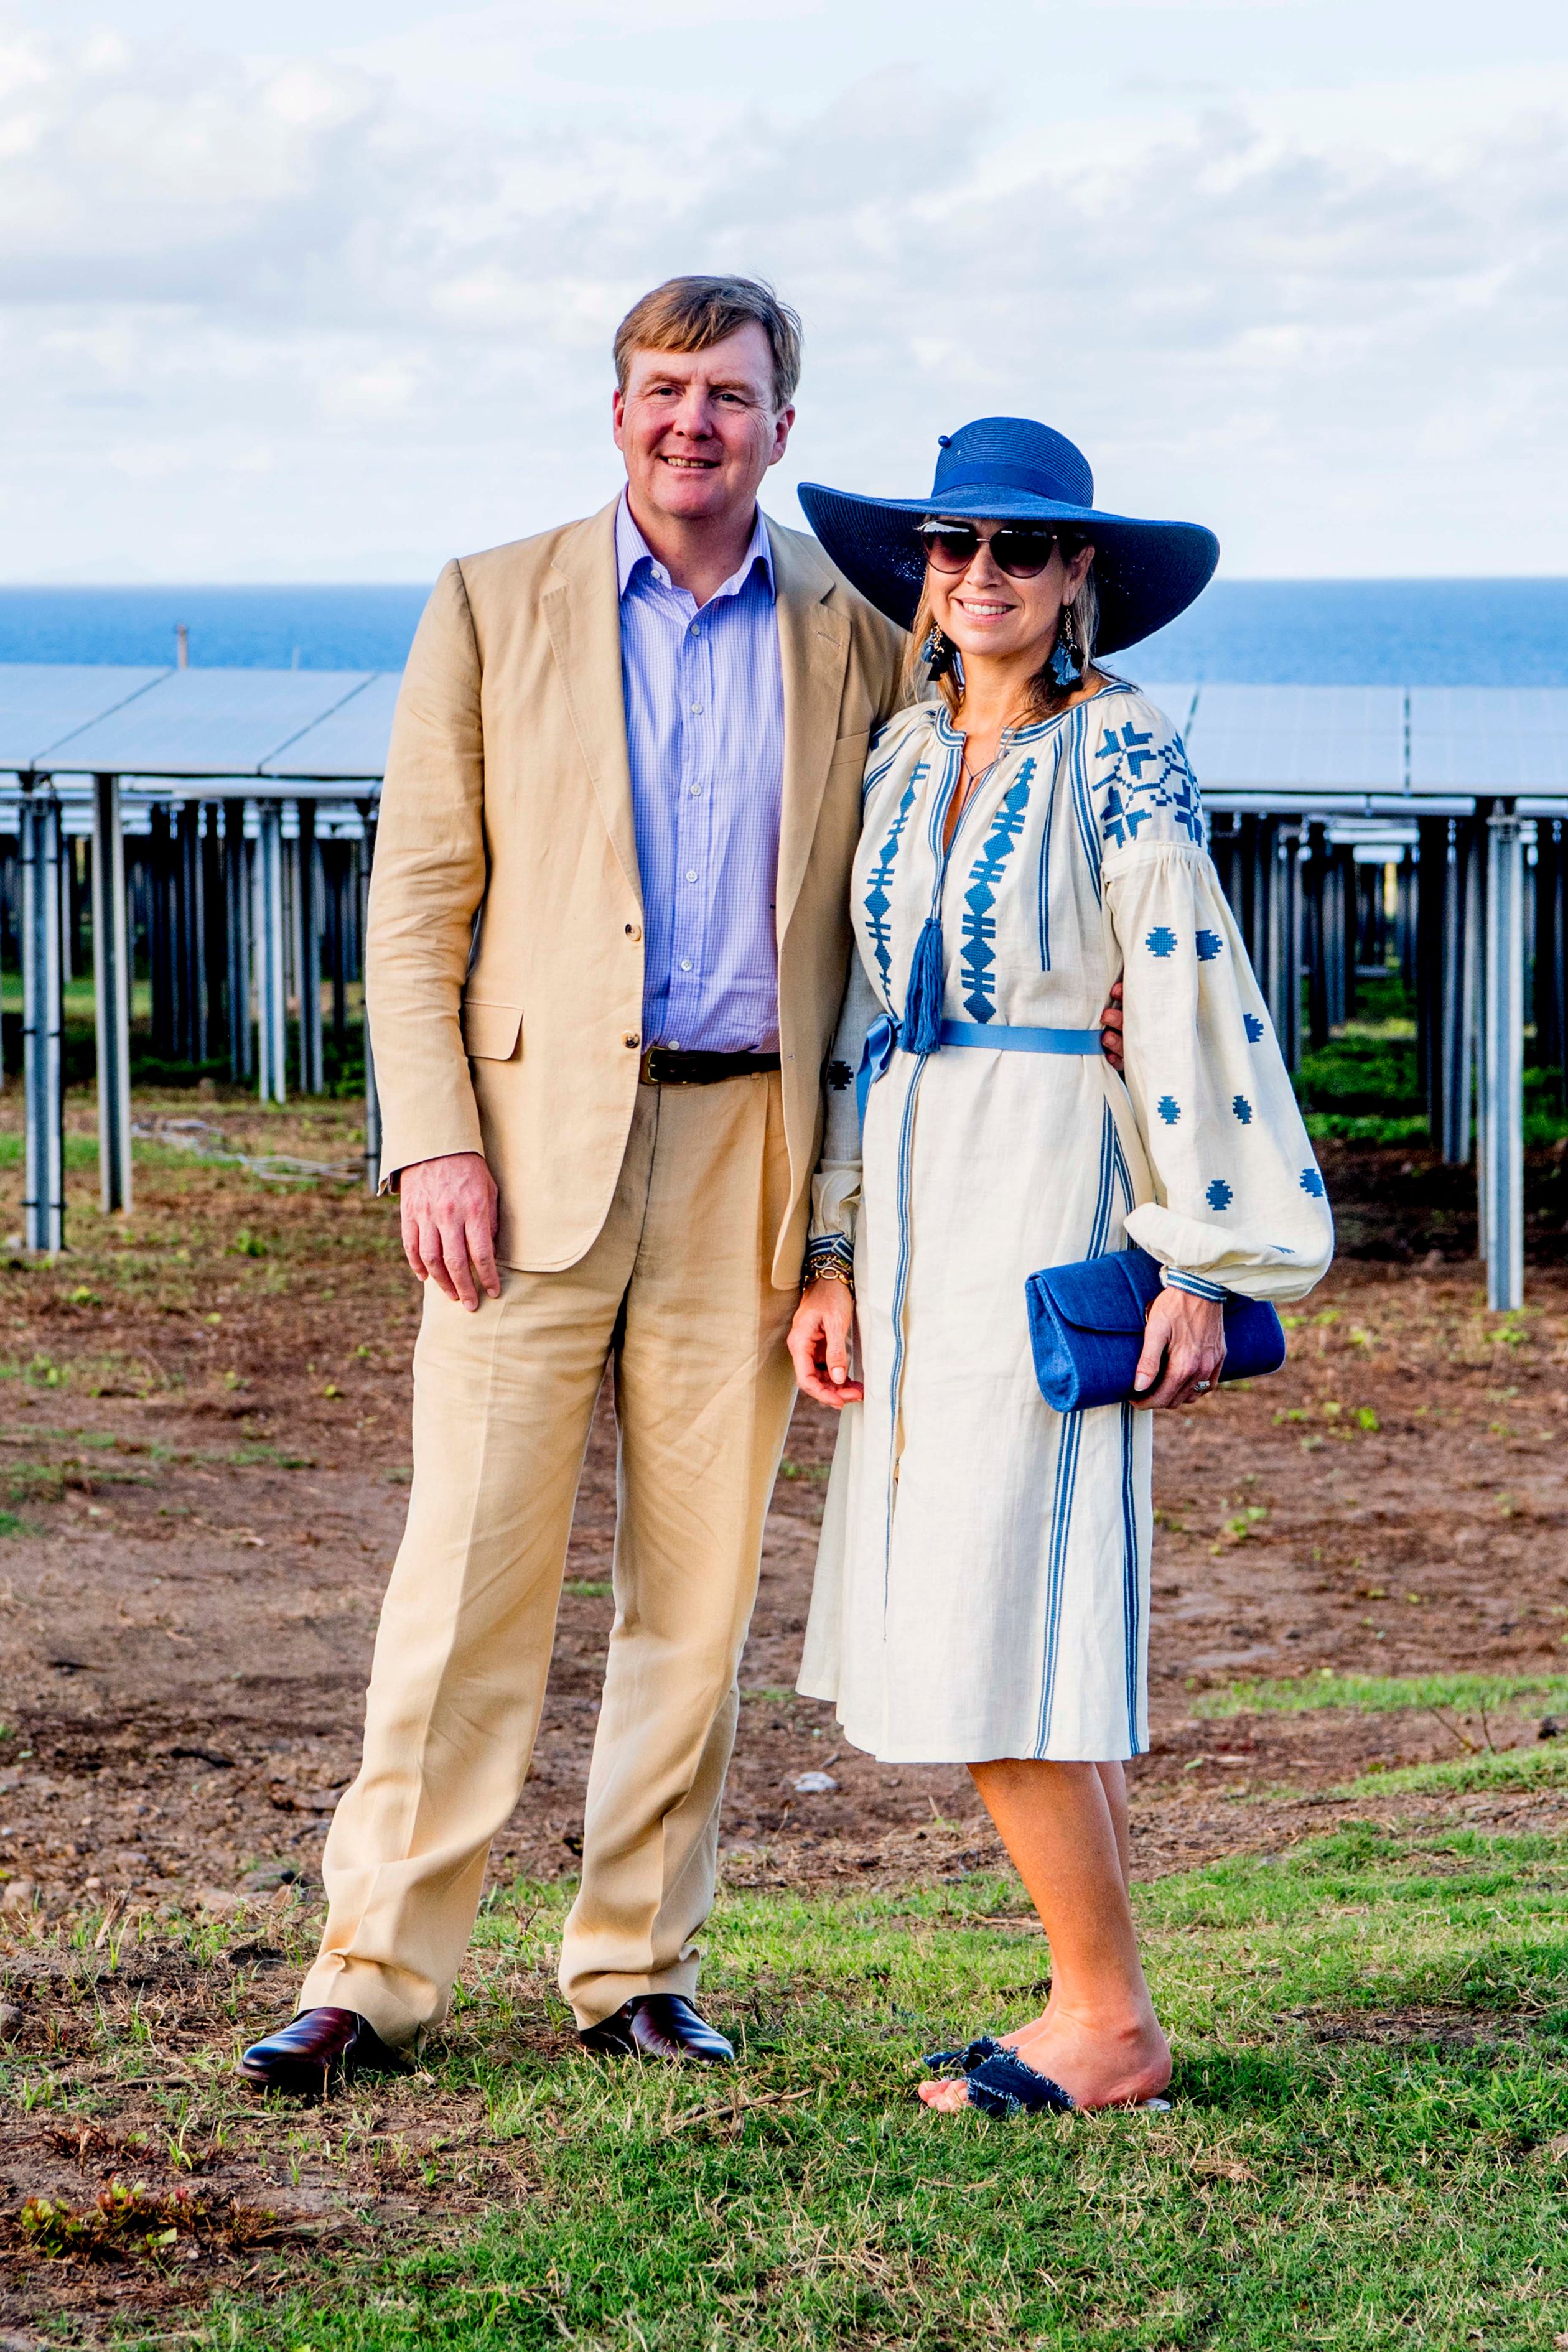 In 2018 bracht het koningspaar een bezoek aan Sint-Eustatius. Máxima stapte uit het vliegtuig in